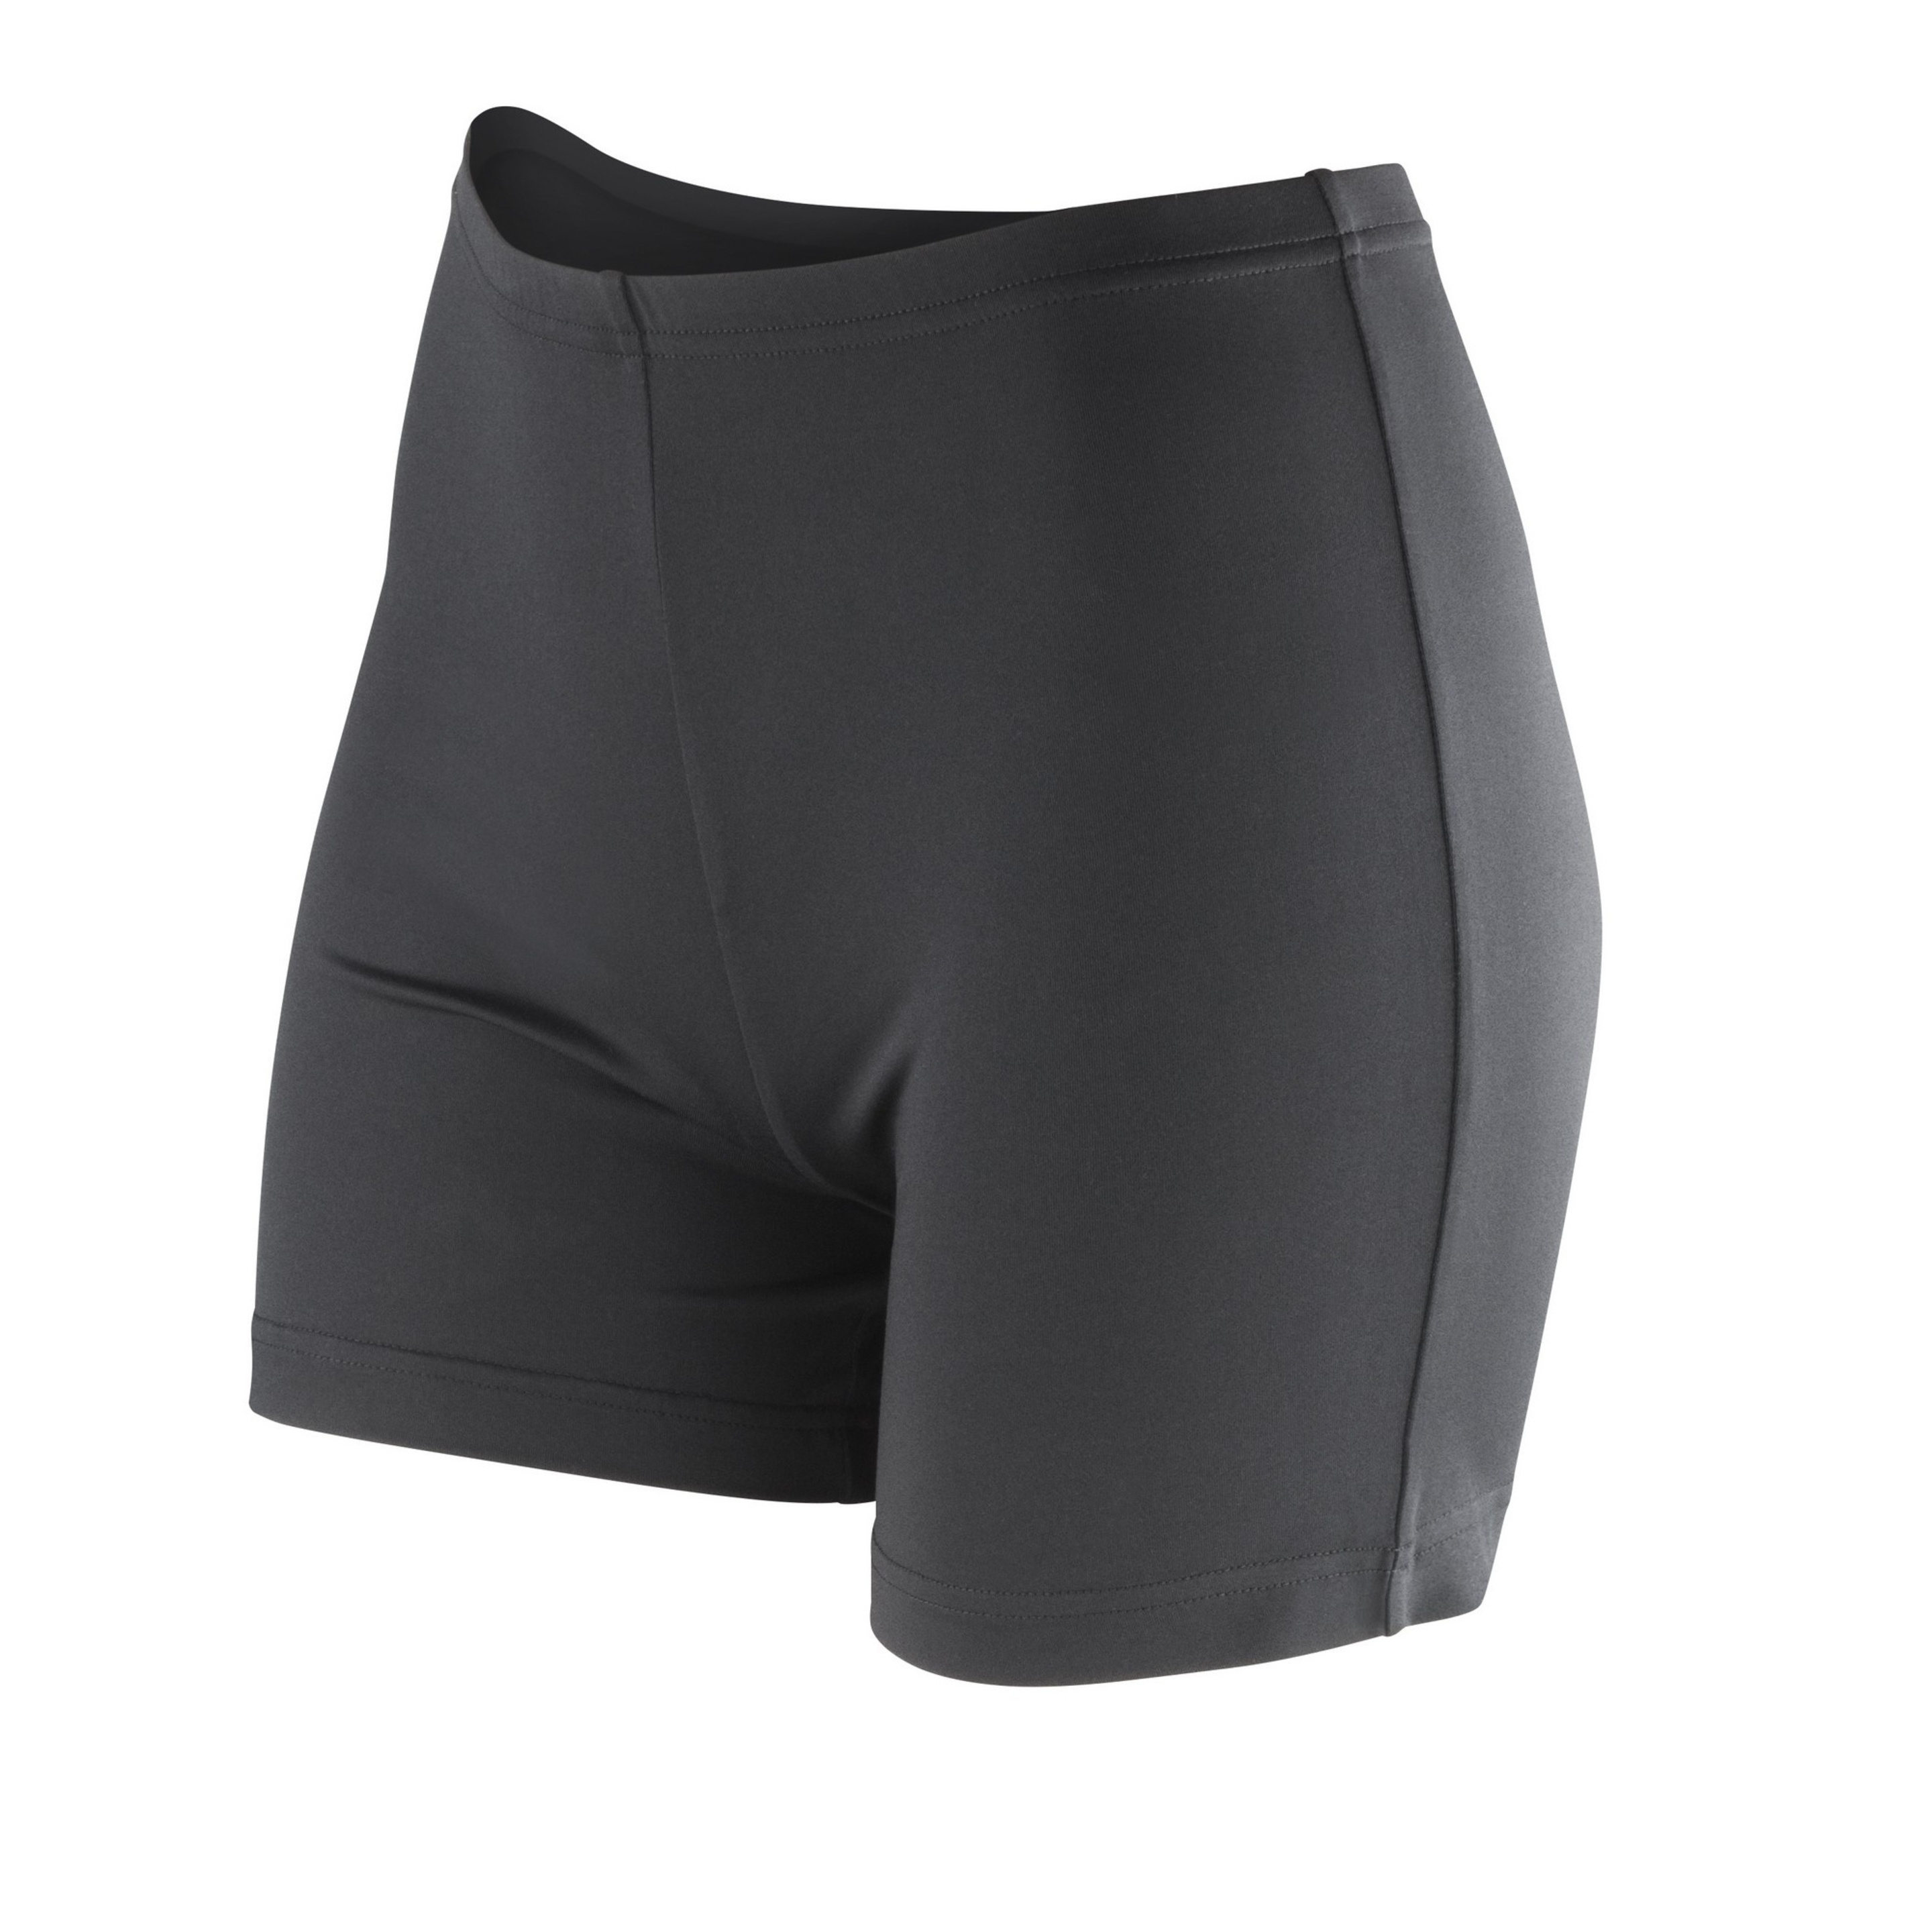 Pantalones Cortos De Secado Rápido Spiro - Negro  MKP